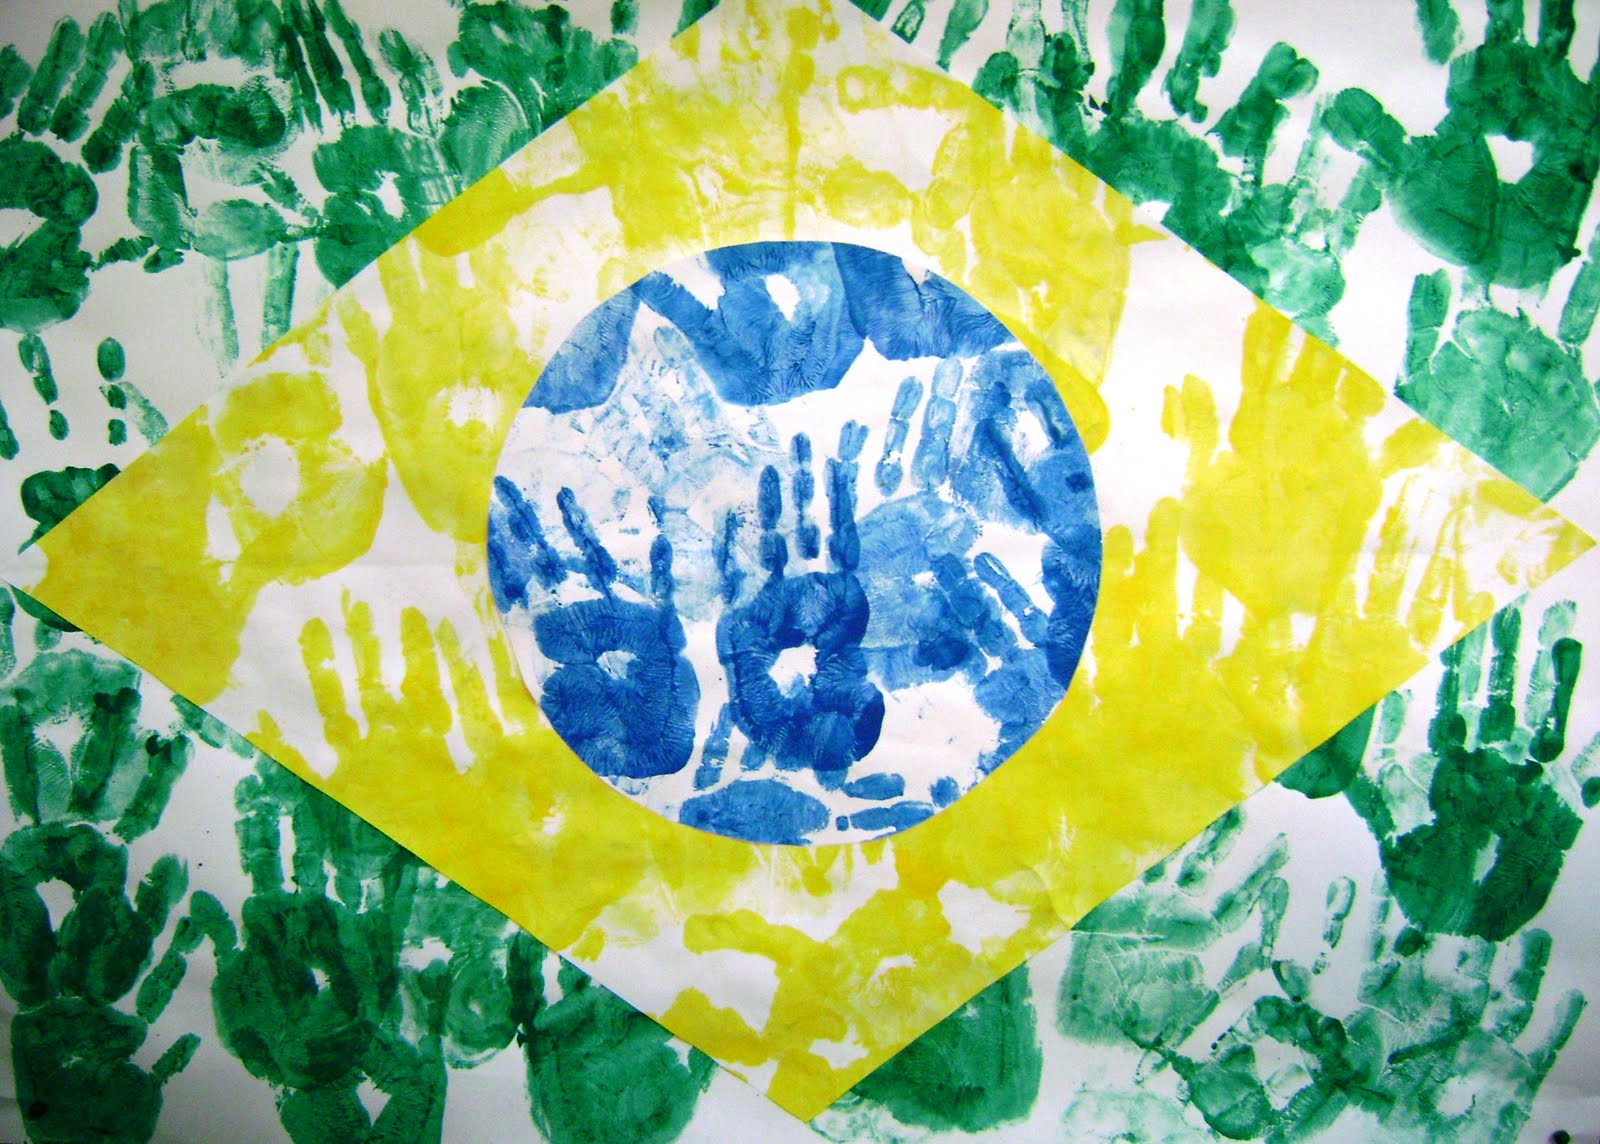 bandeira do brasil formada com mãos de crianças carimbada em verde, amarelo e azul